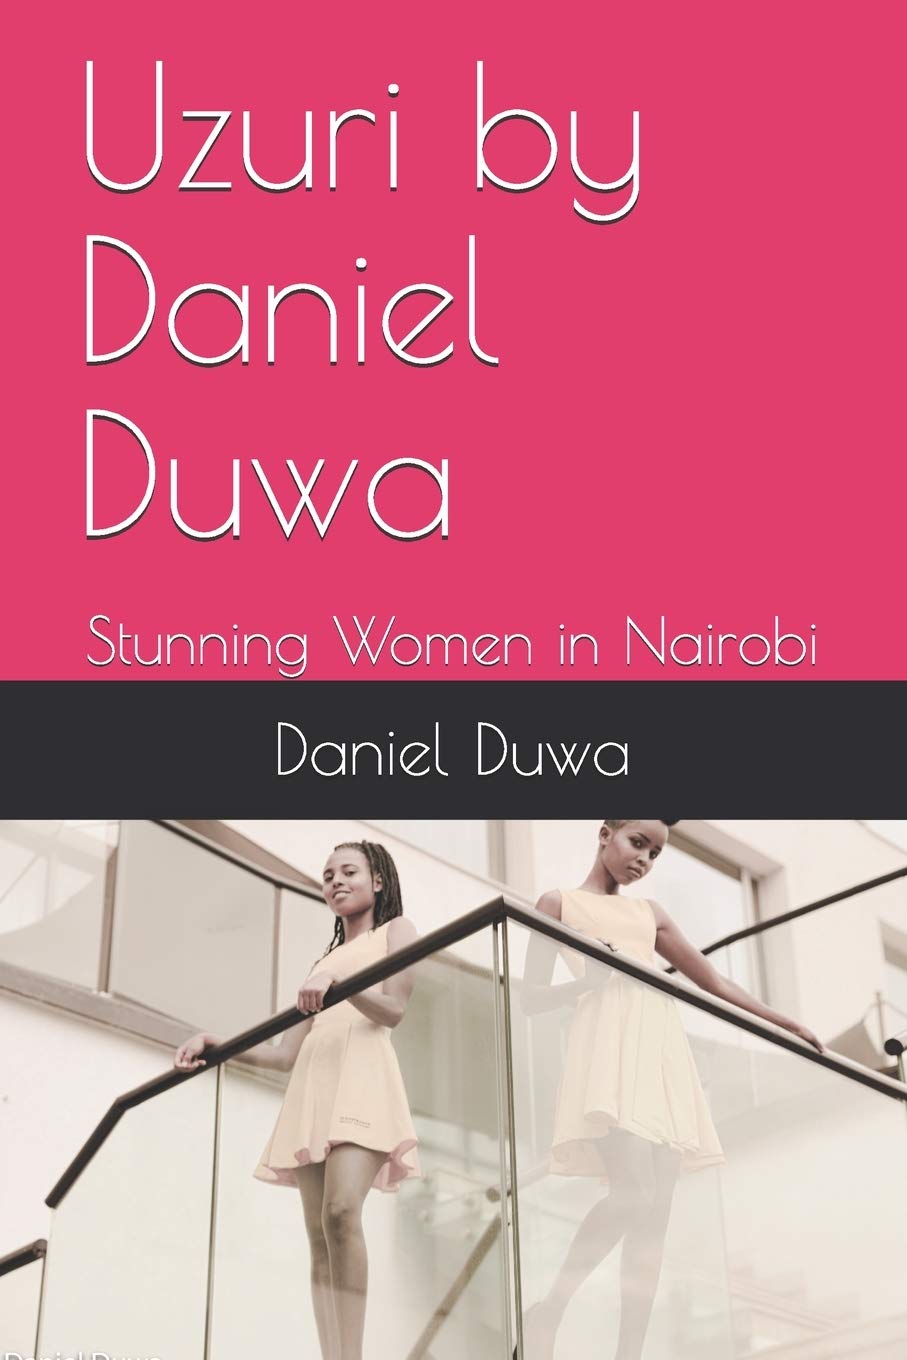 Uzuri - Stunning Women In Nairobi by Daniel Duwa 